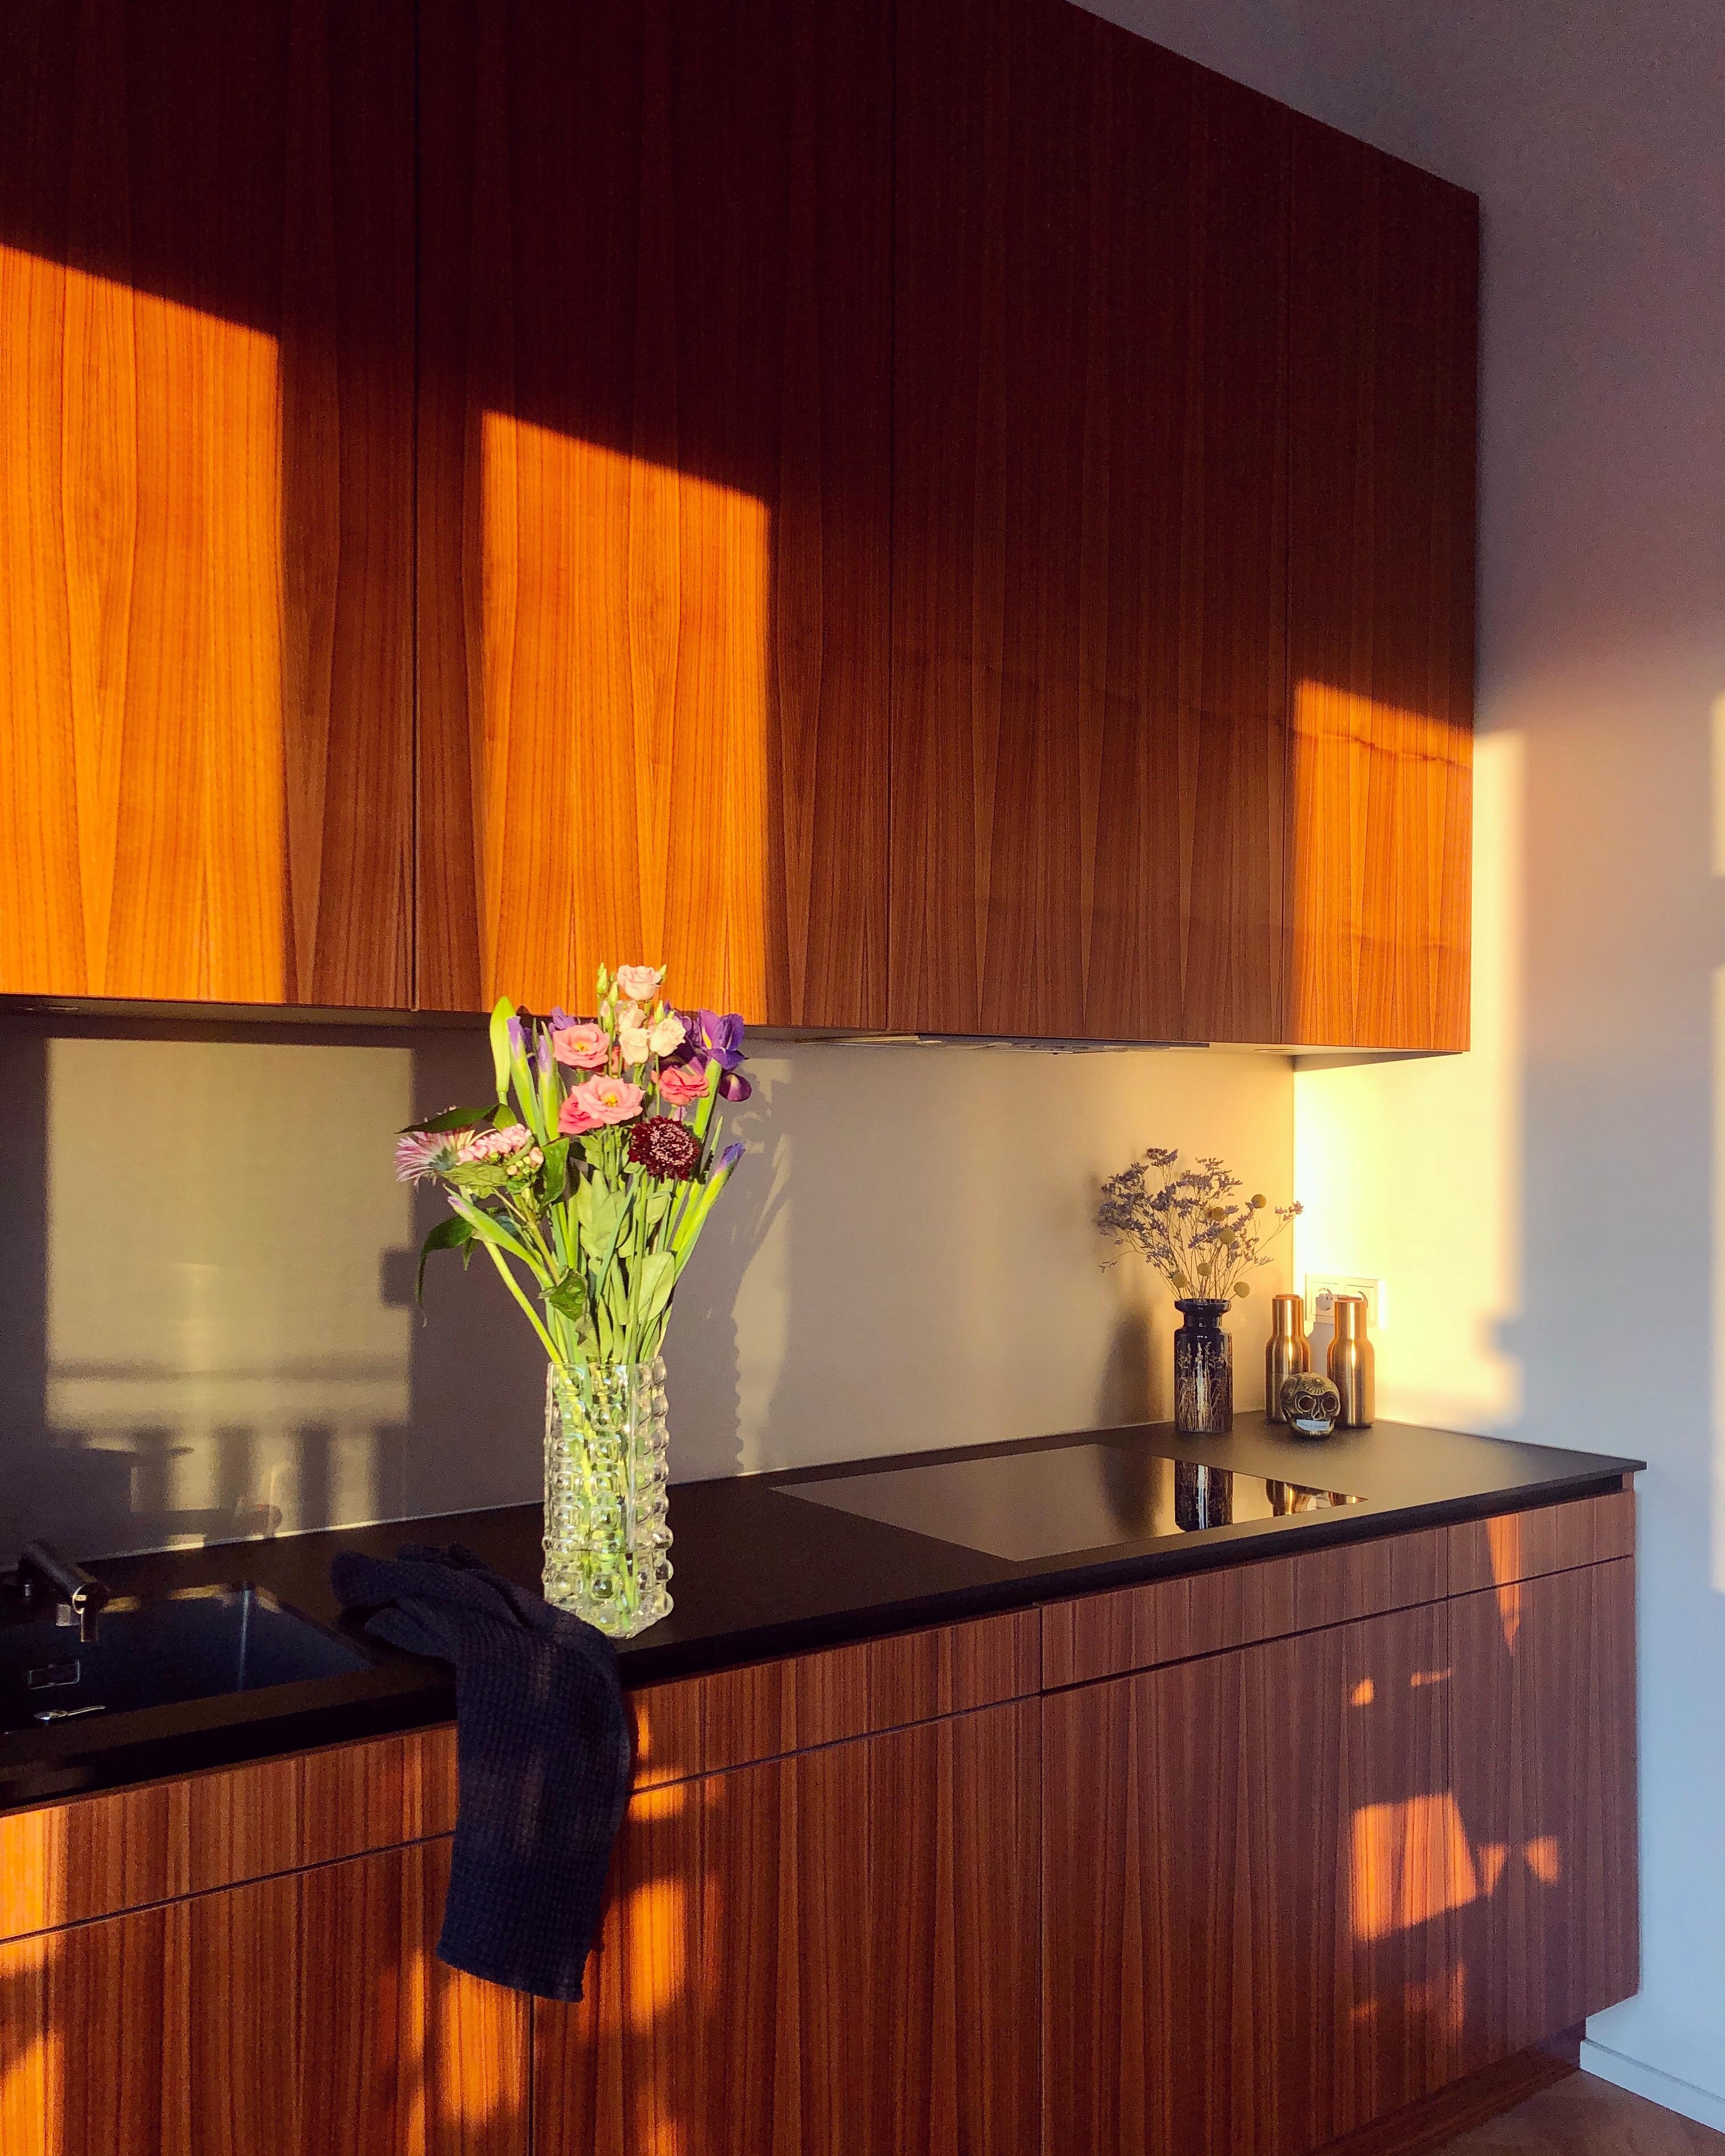 Sonne und Blumen, was will man mehr? 💐☀️ #küche #vasenliebe #blumendeko